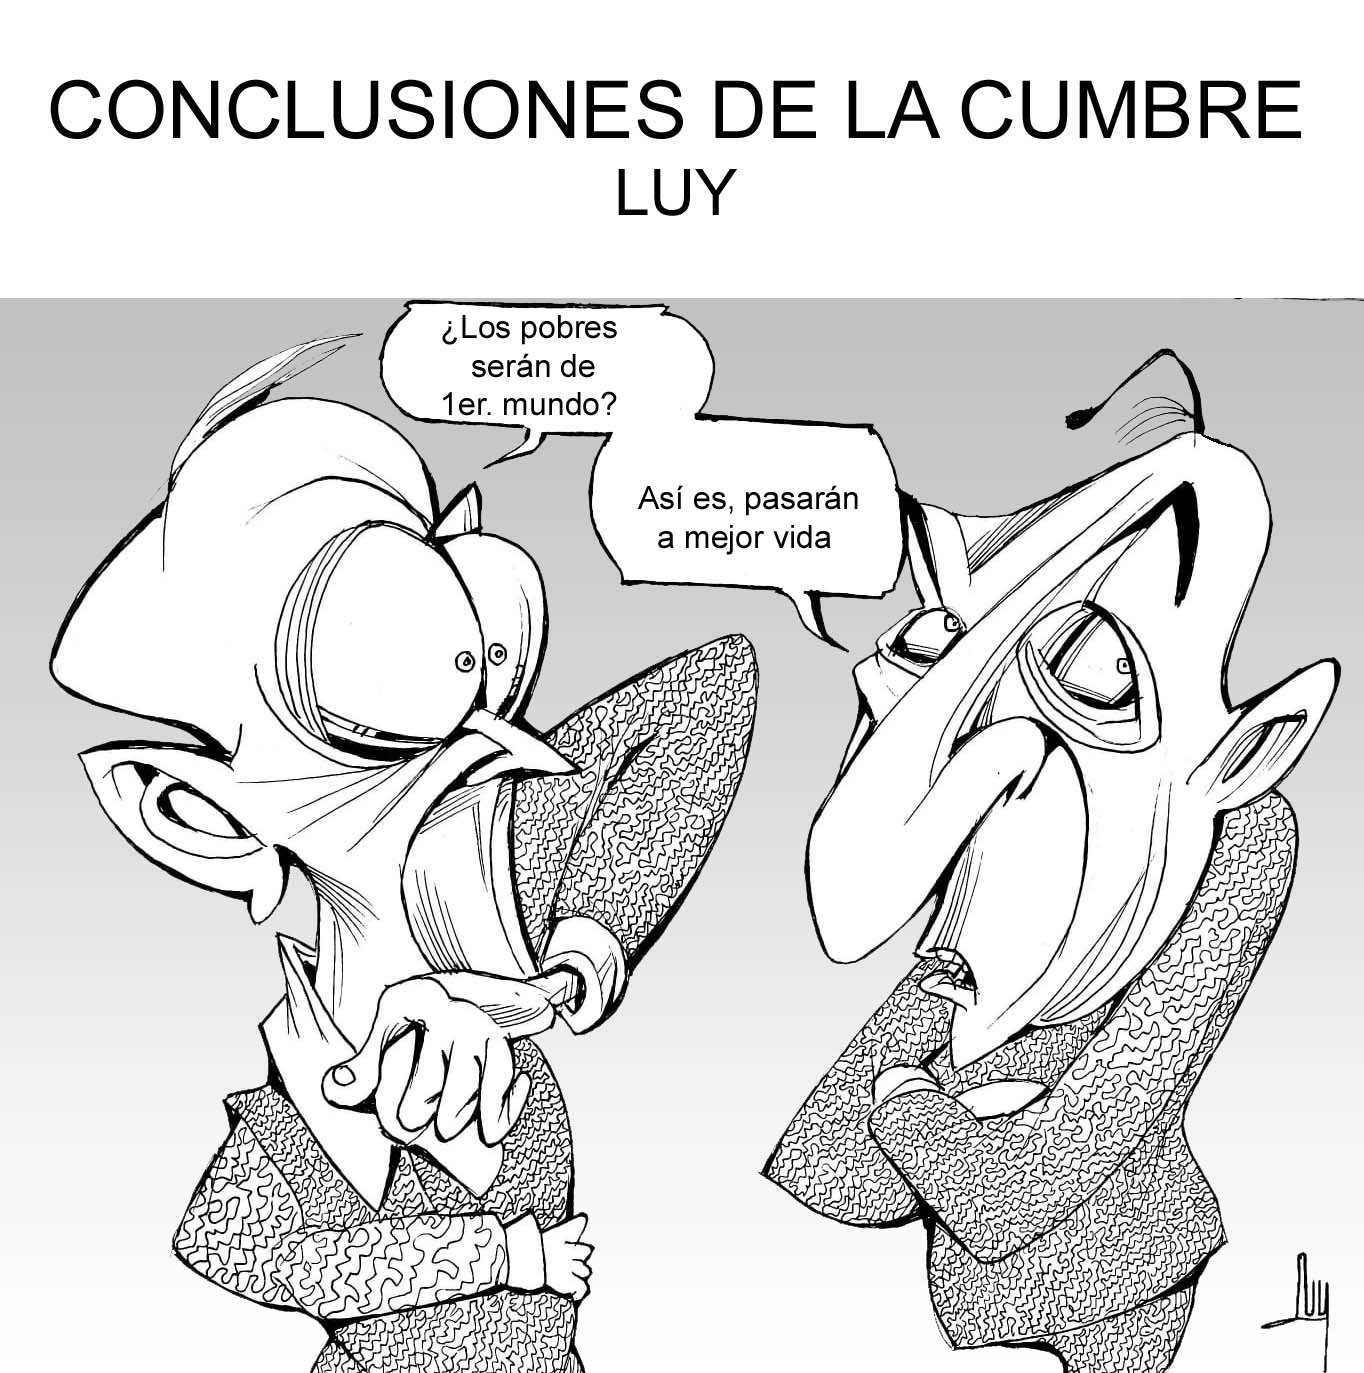 CONCLUSIONES DE LA CUMBRE-LUY